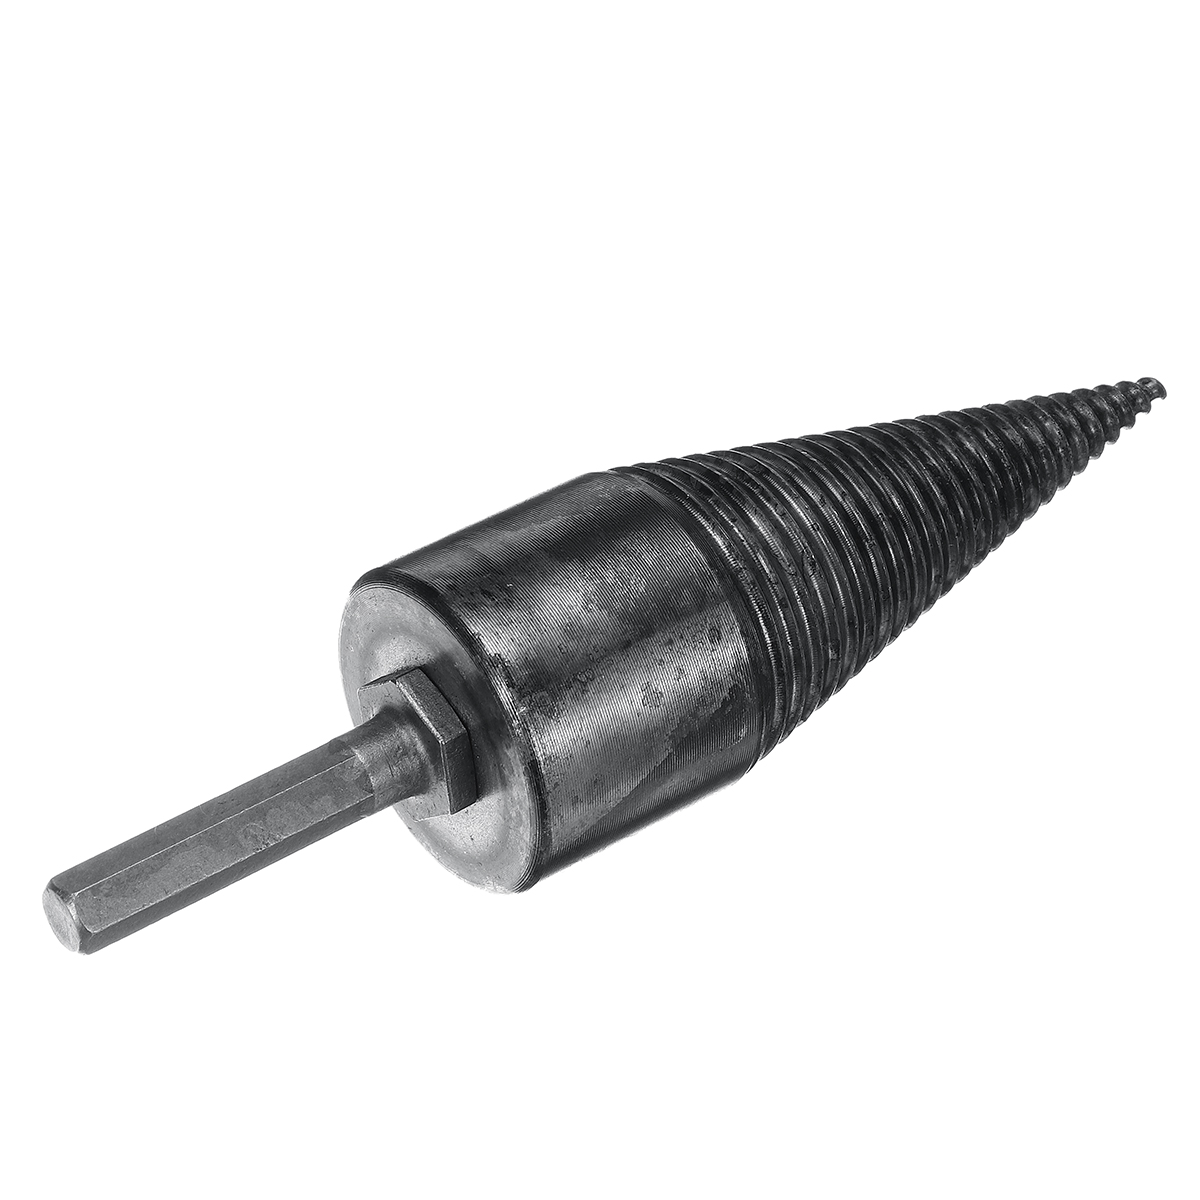 42mm-High-Speed-Steel-Firewood-Splitting-Drill-Bit-Hard-Wood-Cone-Splitter-Bit-1620176-7